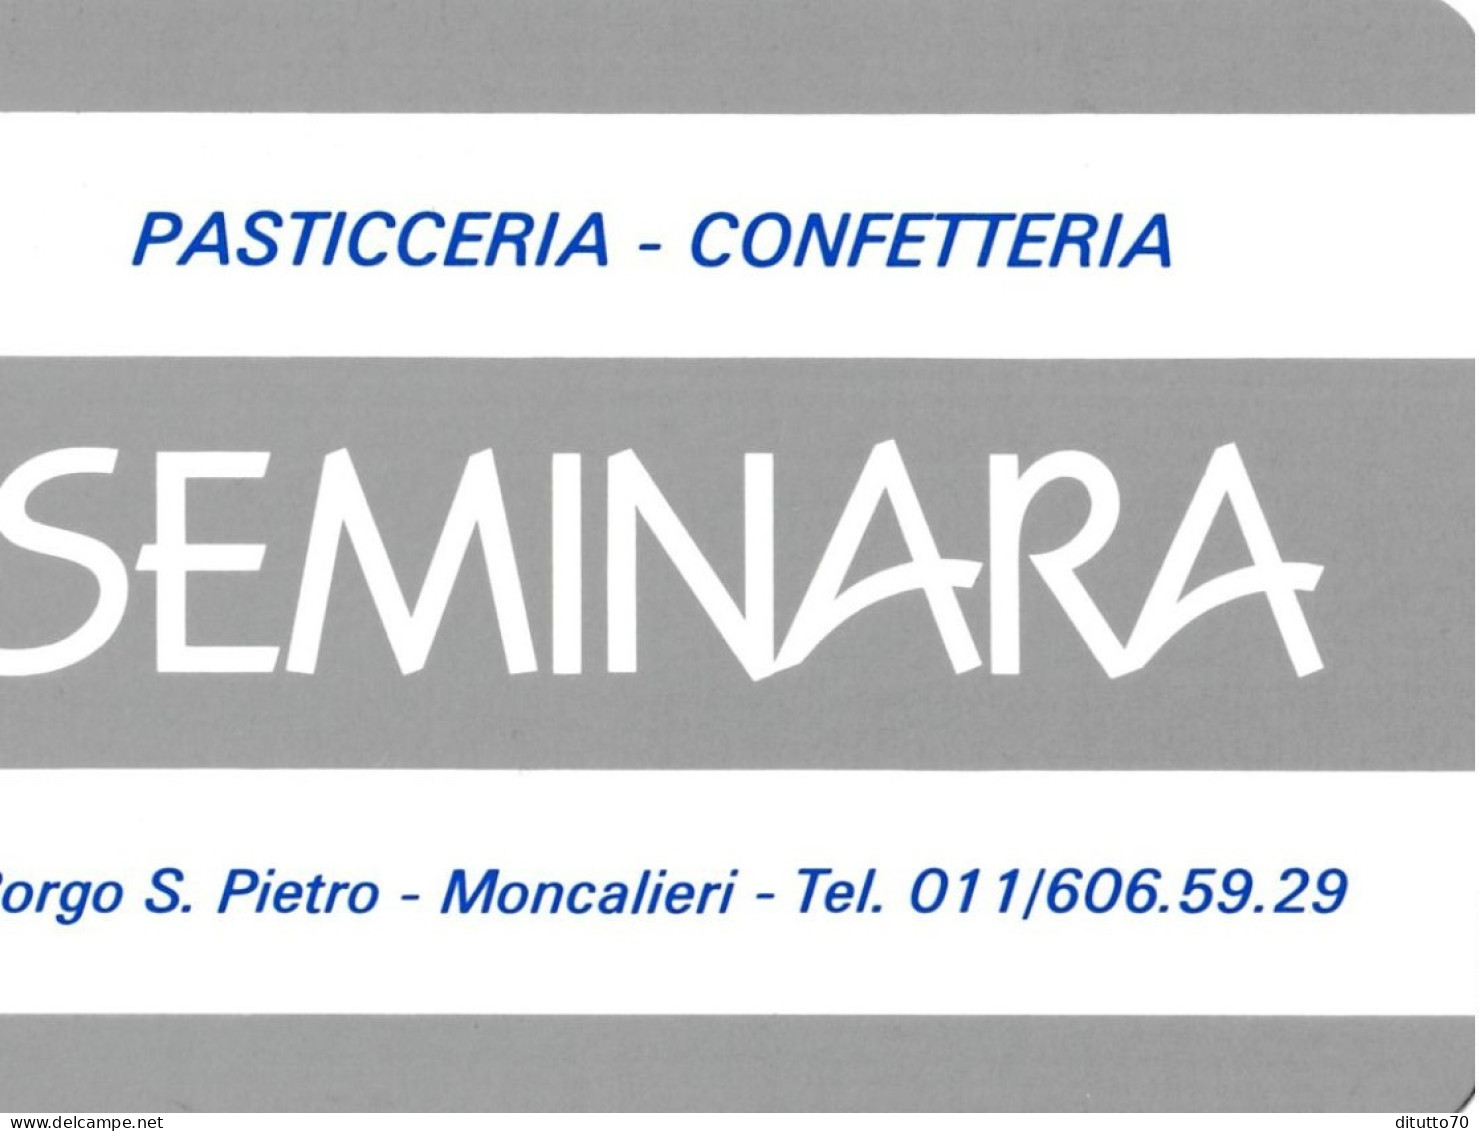 Calendarietto - Seminara - Pasticceria - Confetteria - Moncalieri - Anno 1989 - Small : 1981-90